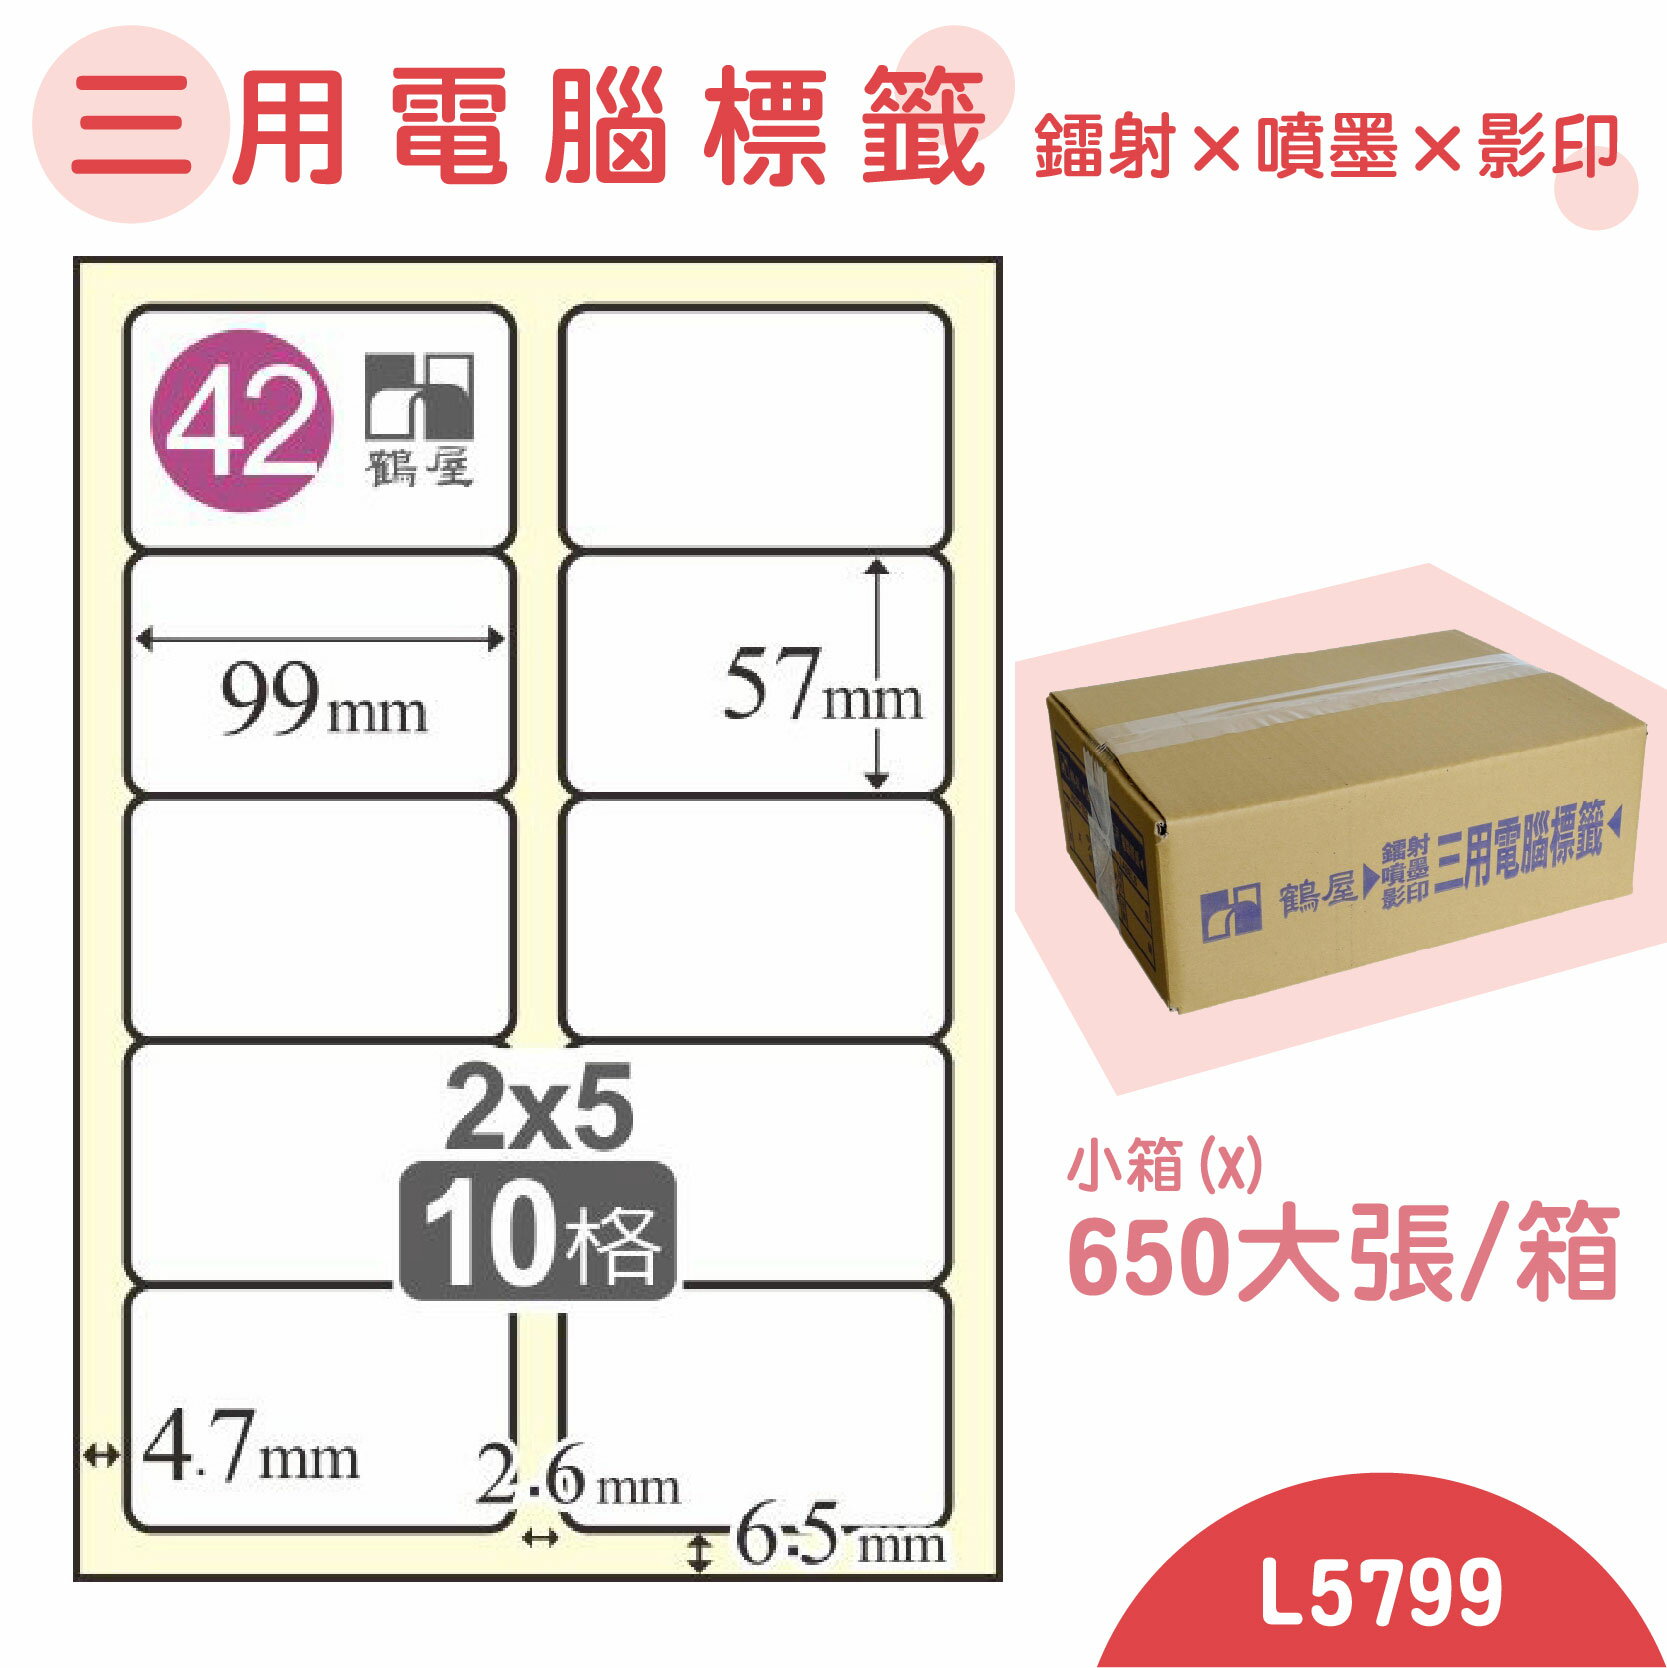 【品質第一】鶴屋 電腦標籤紙 白 L5799 10格 650大張/小箱 影印 雷射 噴墨 三用 標籤 出貨 貼紙